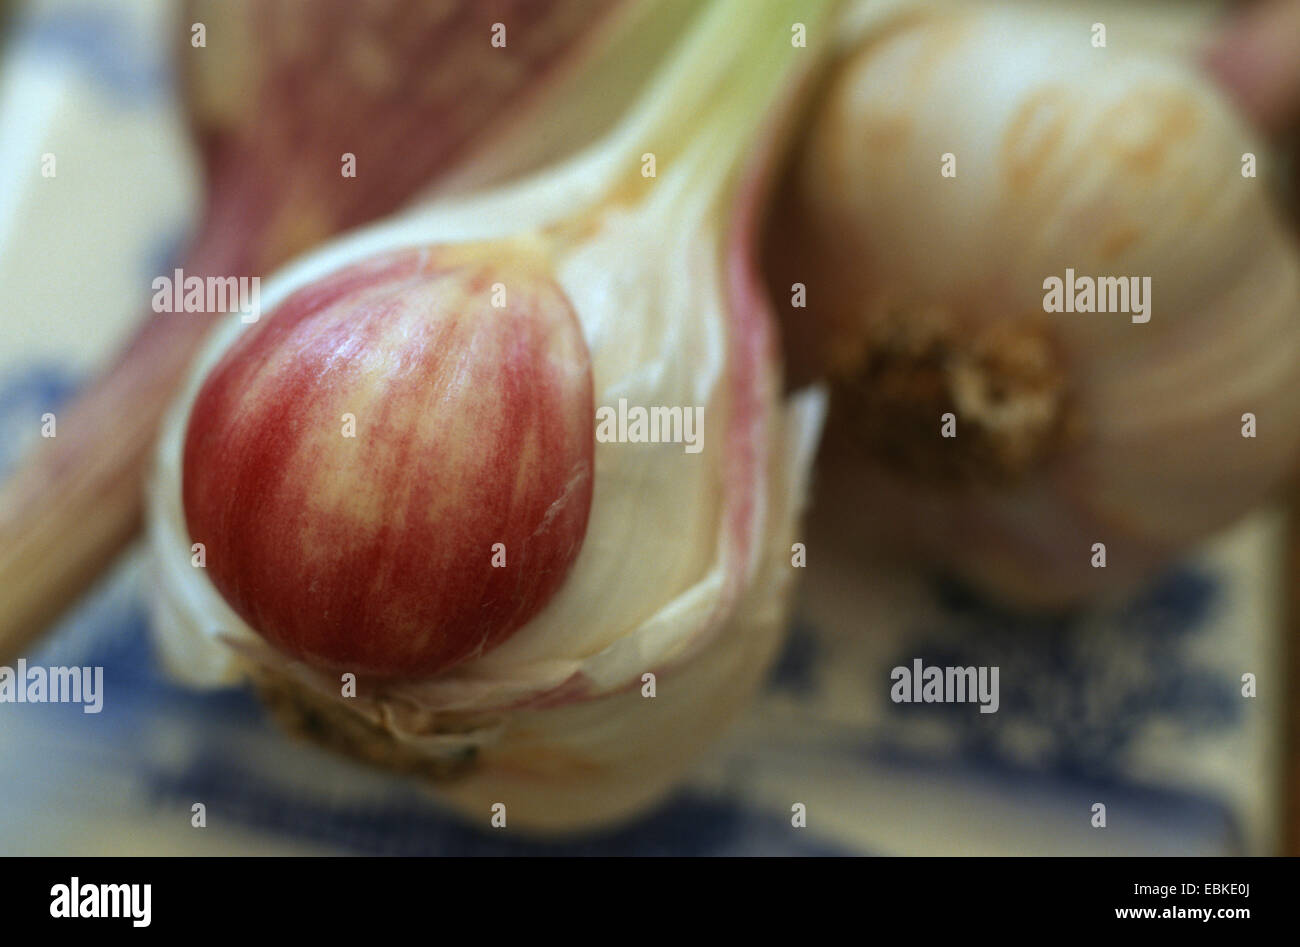 common garlic (Allium sativum), garlic Stock Photo